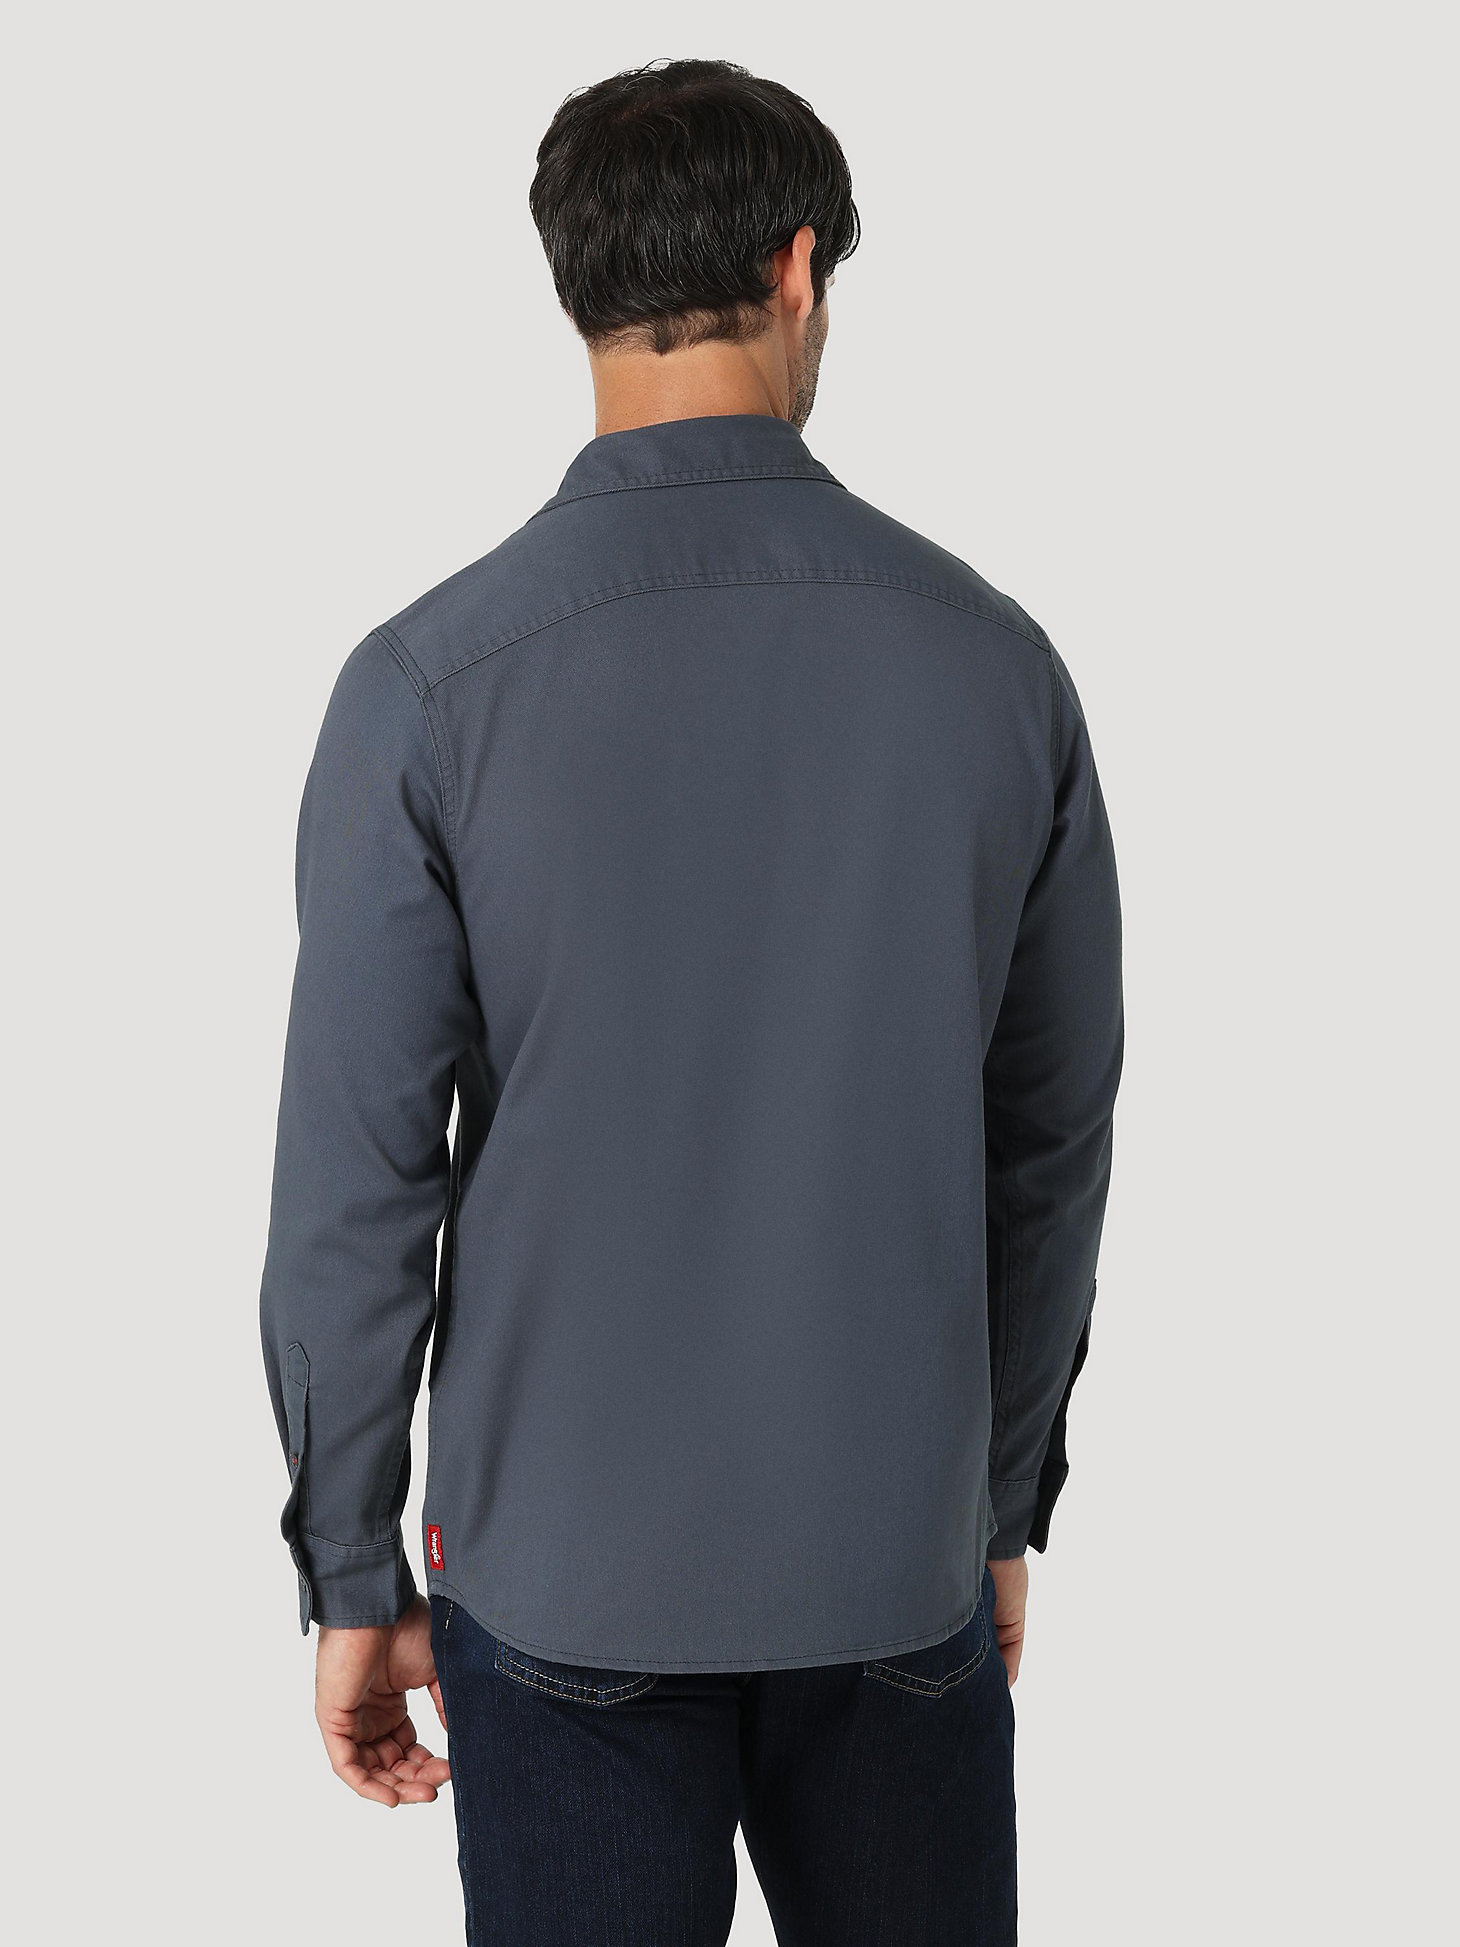 Men's Wrangler® Long Sleeve Twill/Denim Shirt in Ombre Blue alternative view 1